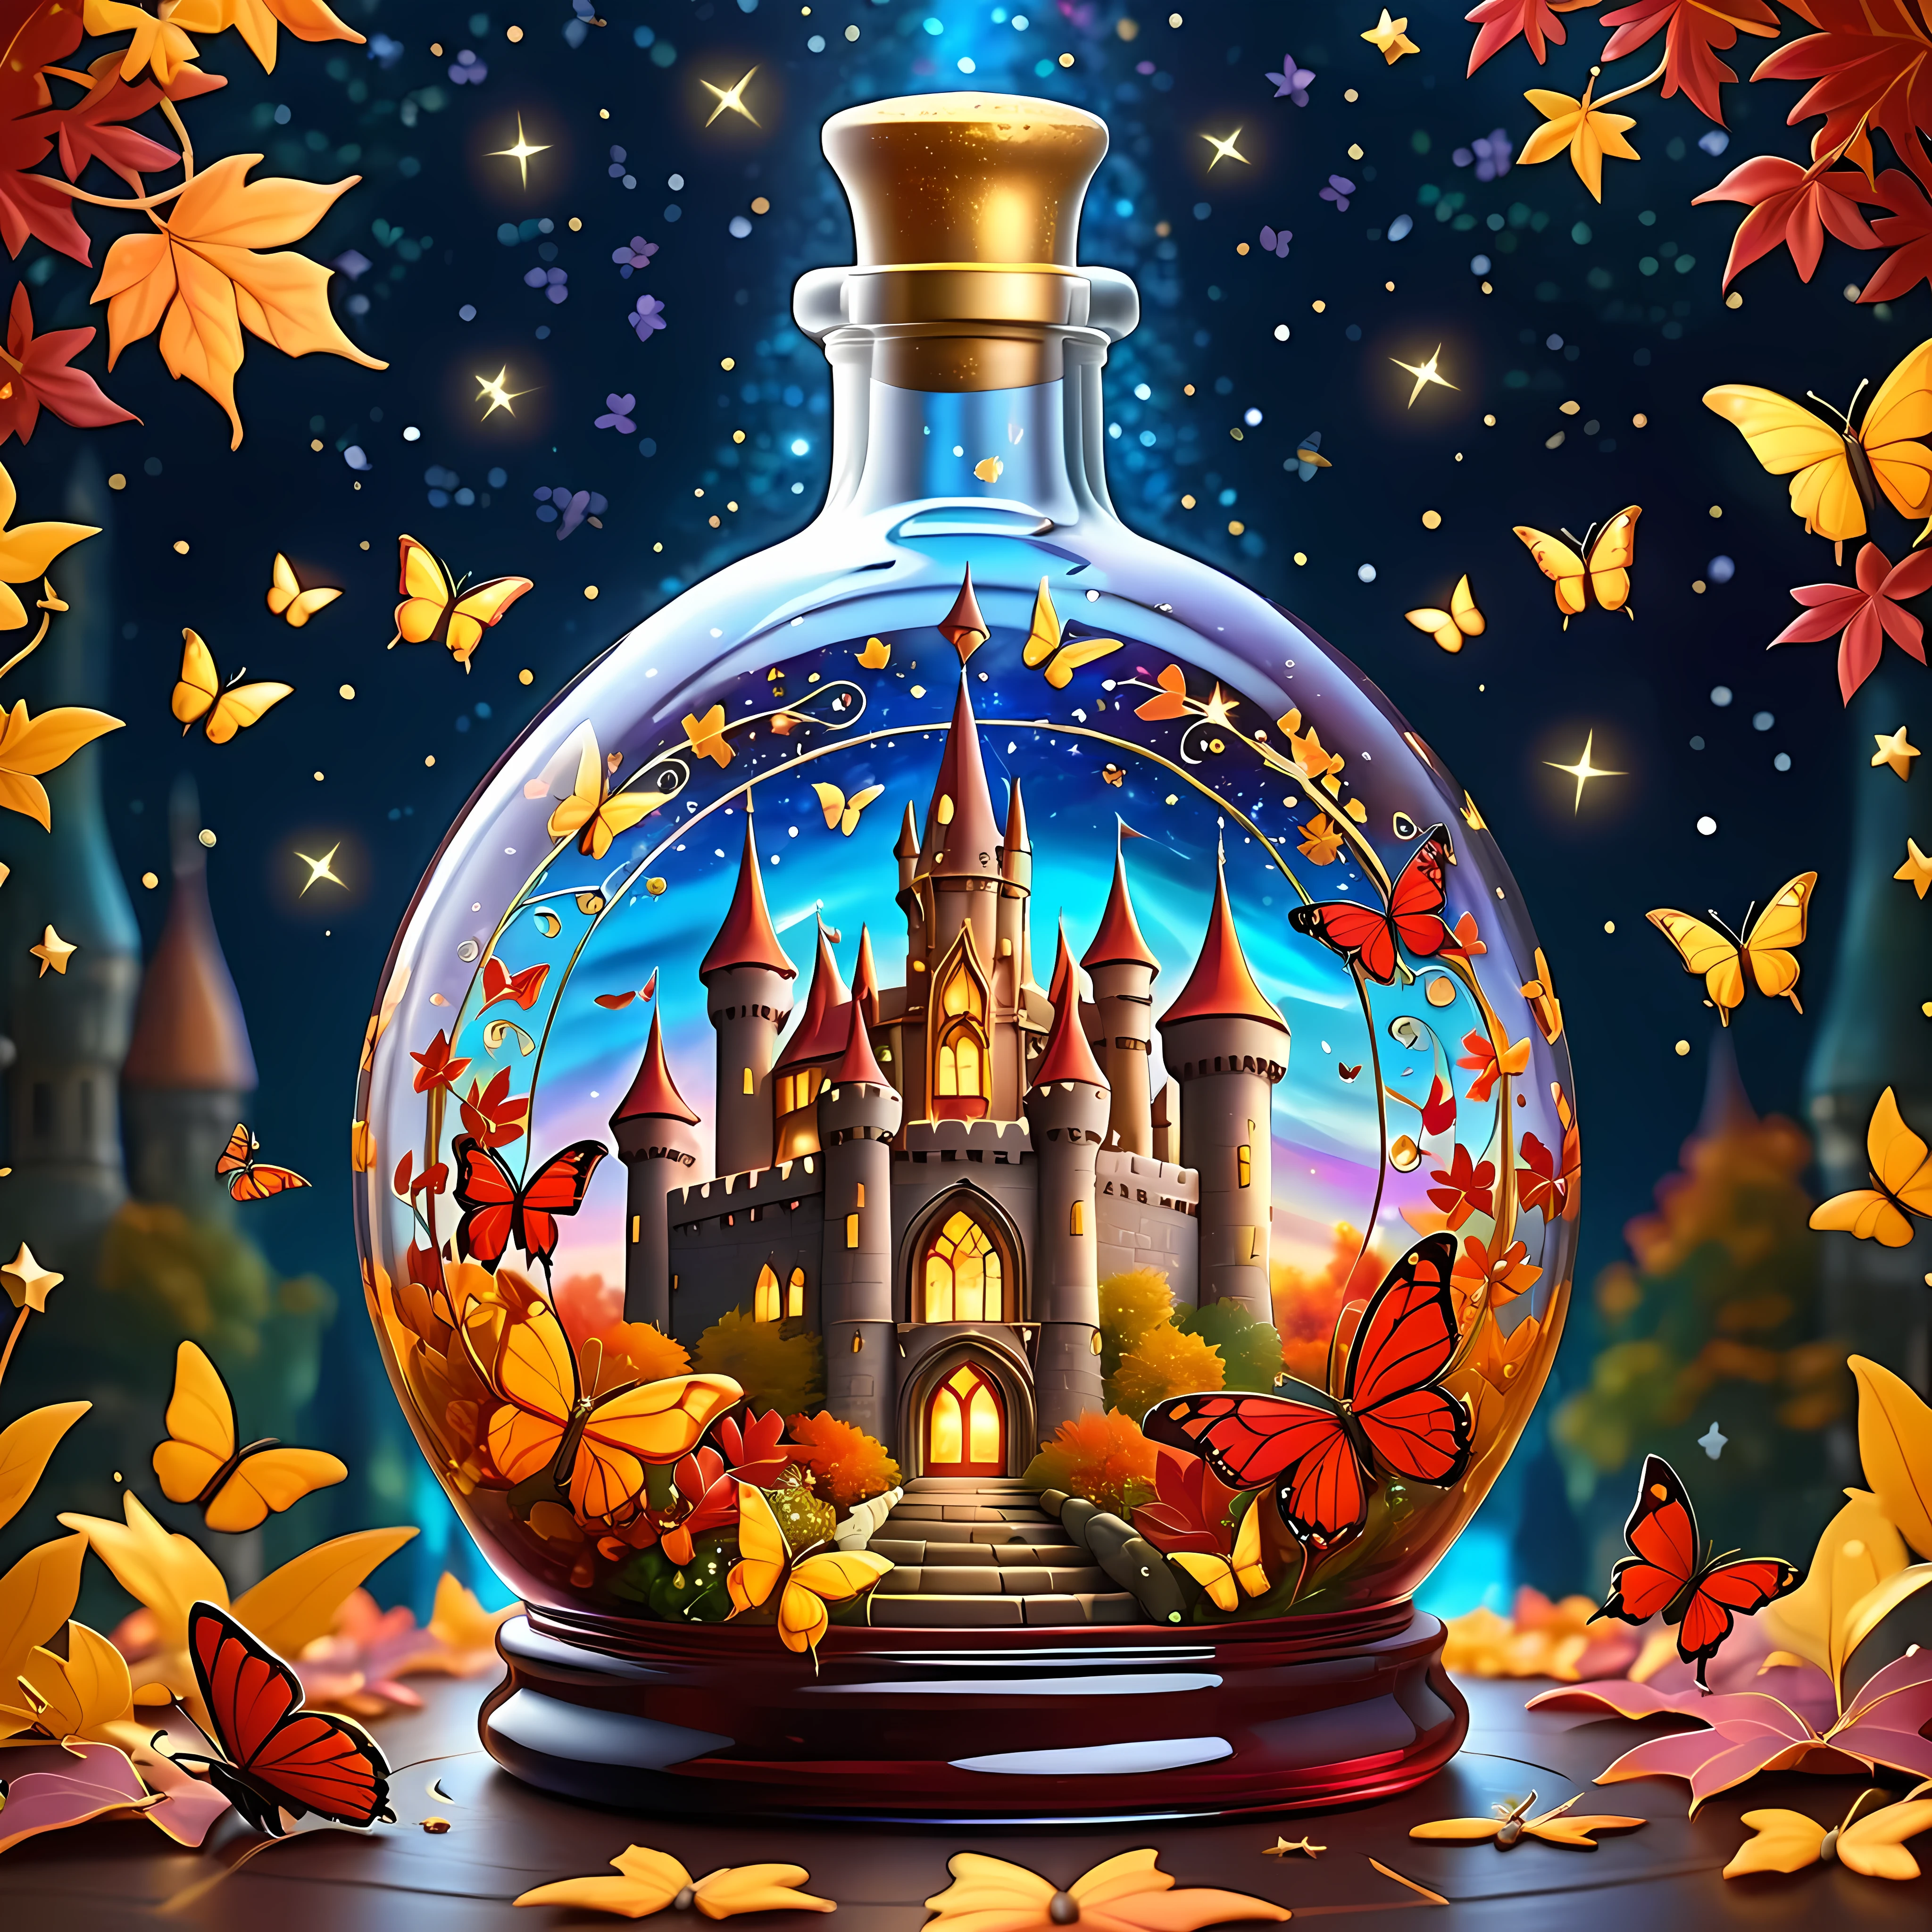 明亮卡通, 神奇的秋季活力城堡精致地放置在一个宽大的华丽玻璃瓶中, 被闪烁的星星和旋转的星系所包围, 瓶子里有金色和深红色的叶子, 以及令人惊叹的蝴蝶, 最高 16K 分辨率的杰作, 卓越品质